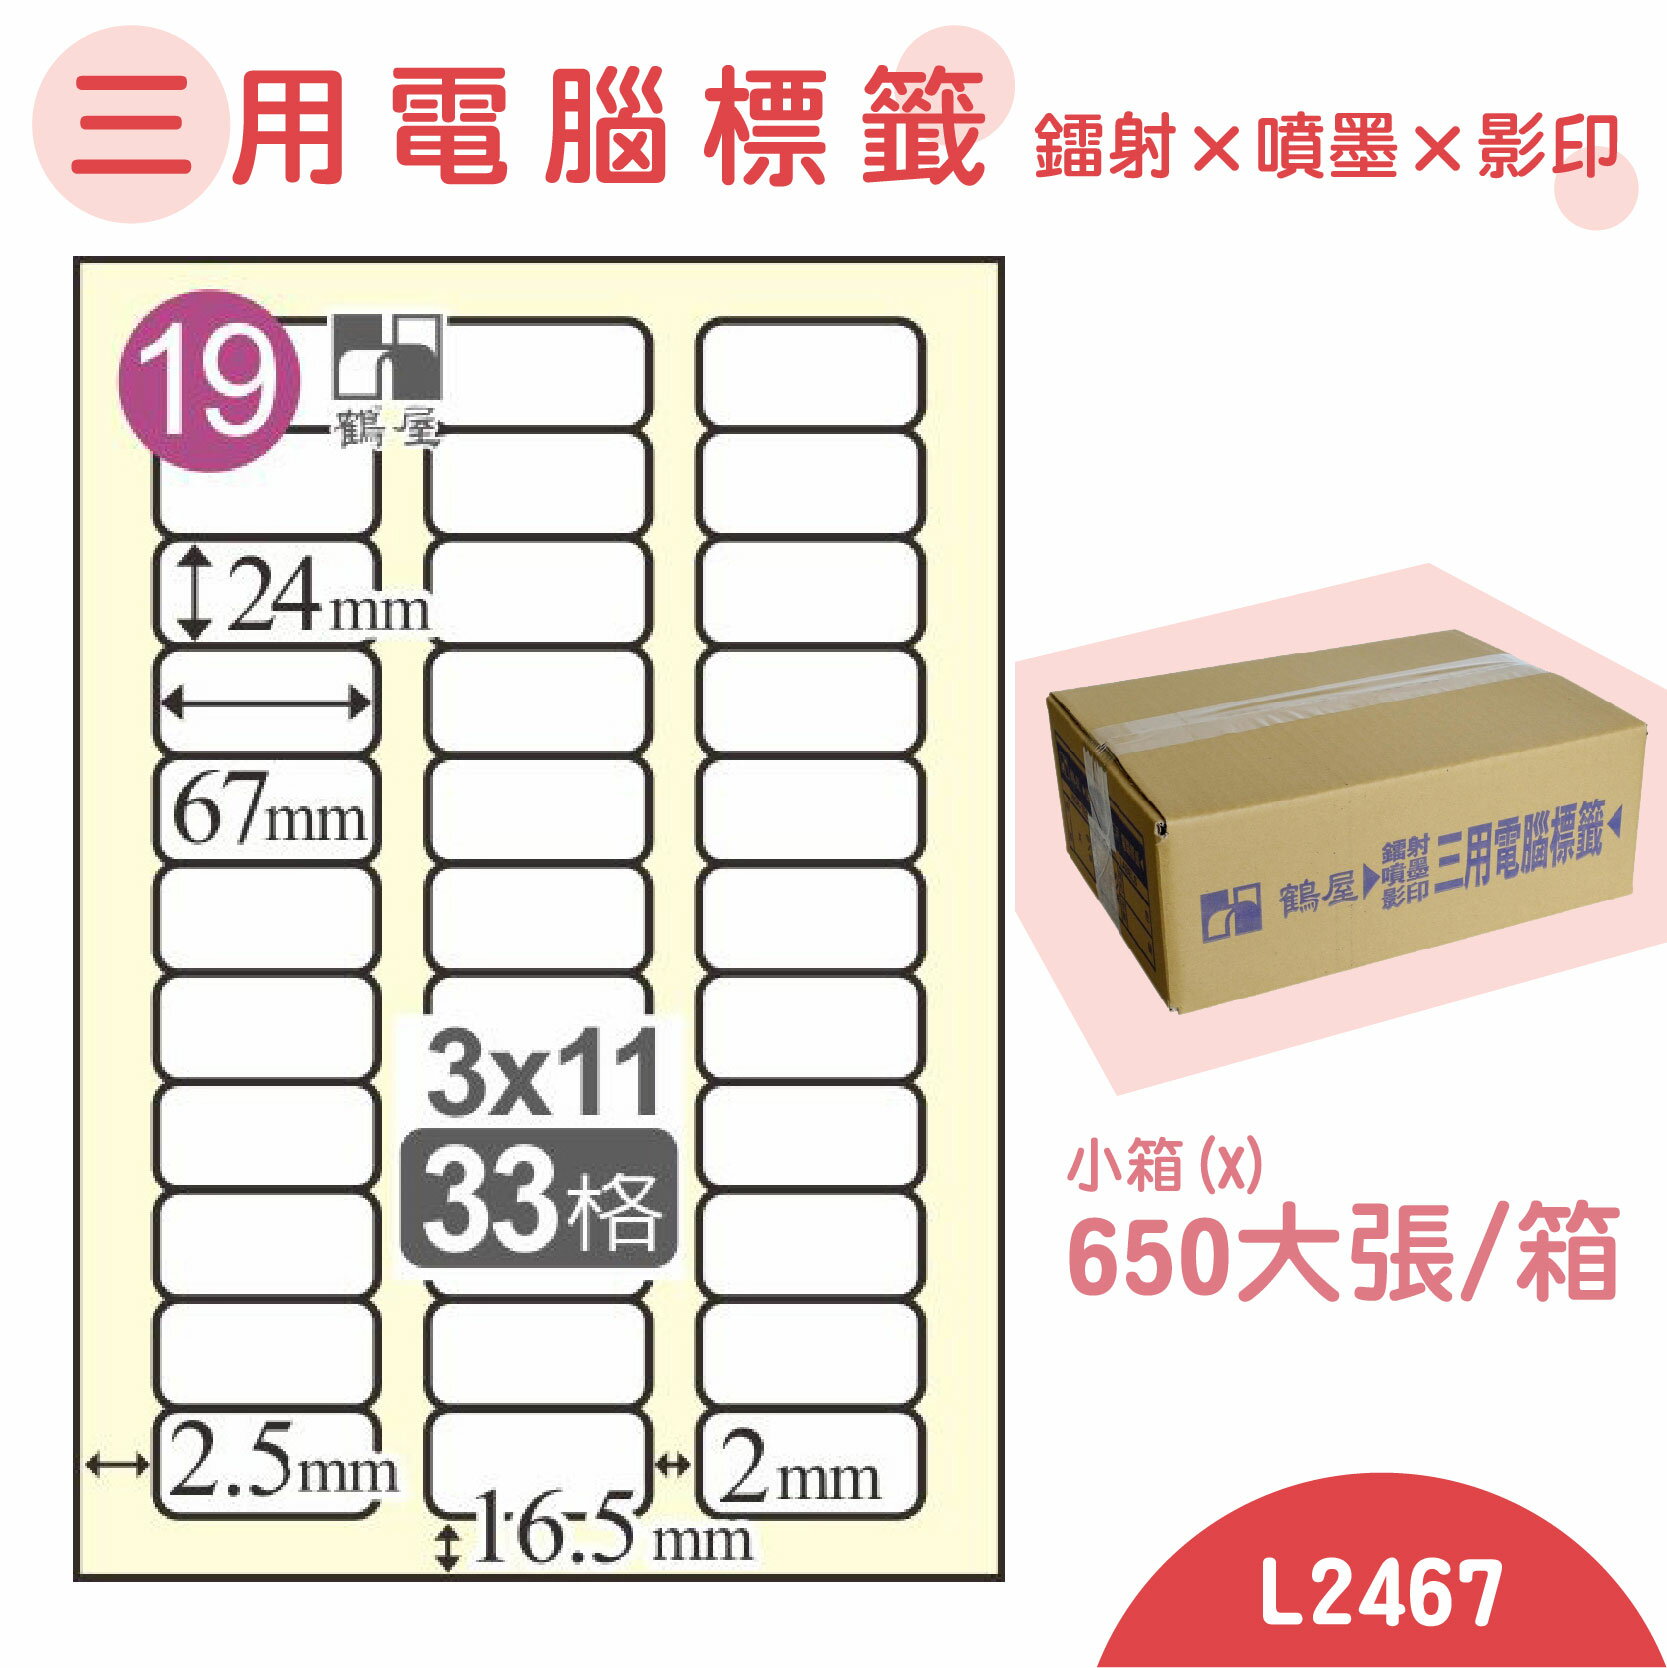 【品質第一】鶴屋 電腦標籤紙 白 L2467 33格 650大張/小箱 影印 雷射 噴墨 三用 標籤 出貨 貼紙